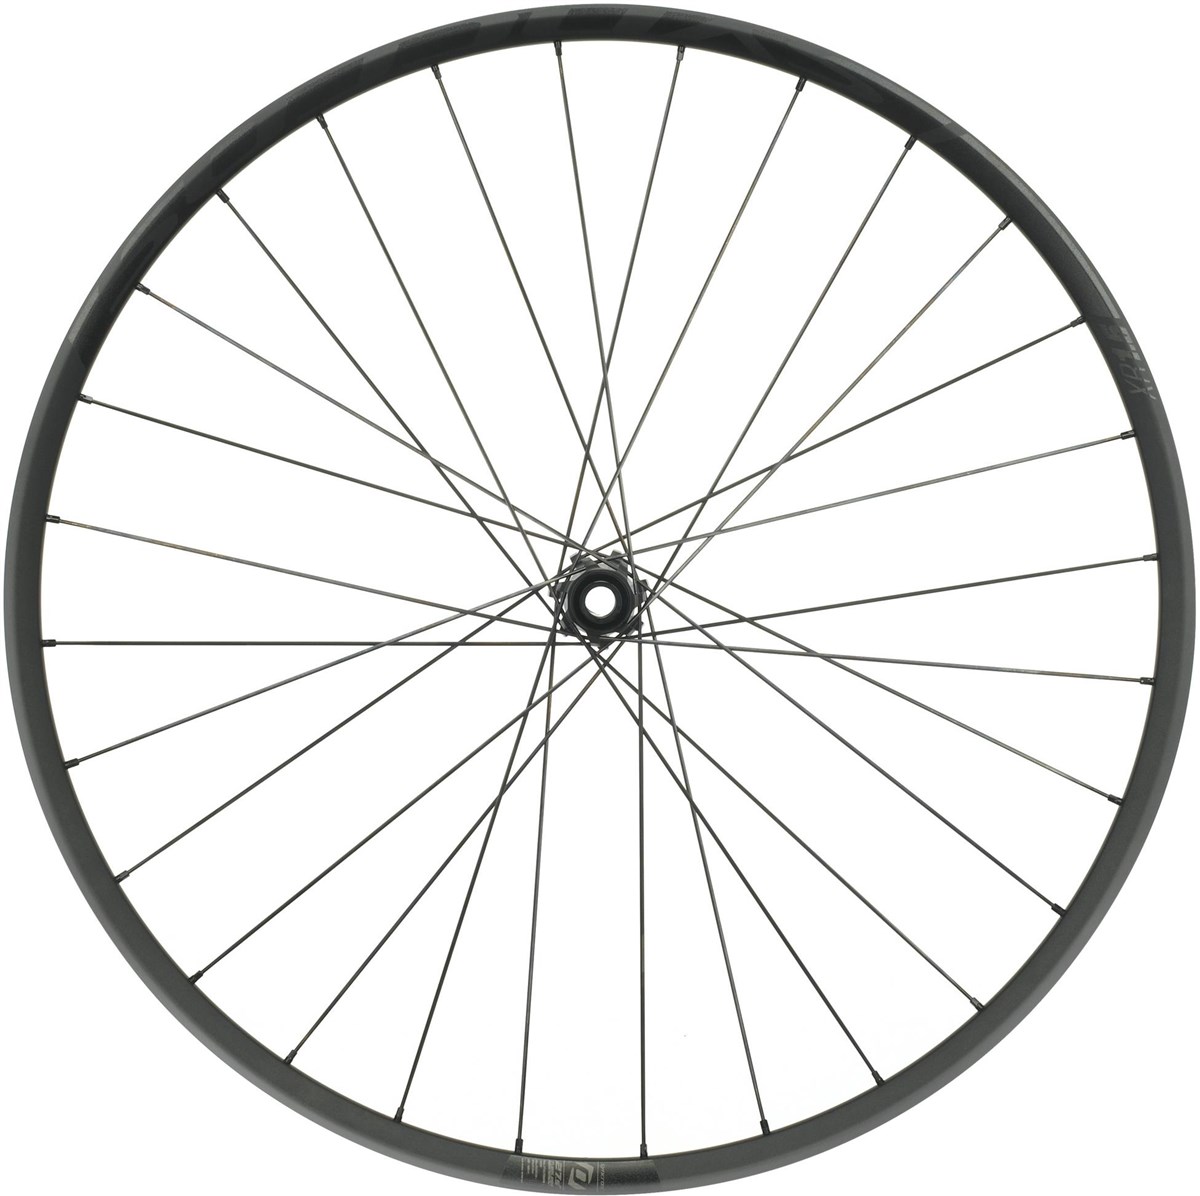 Syncros XR1.5 29" MTB Wheel